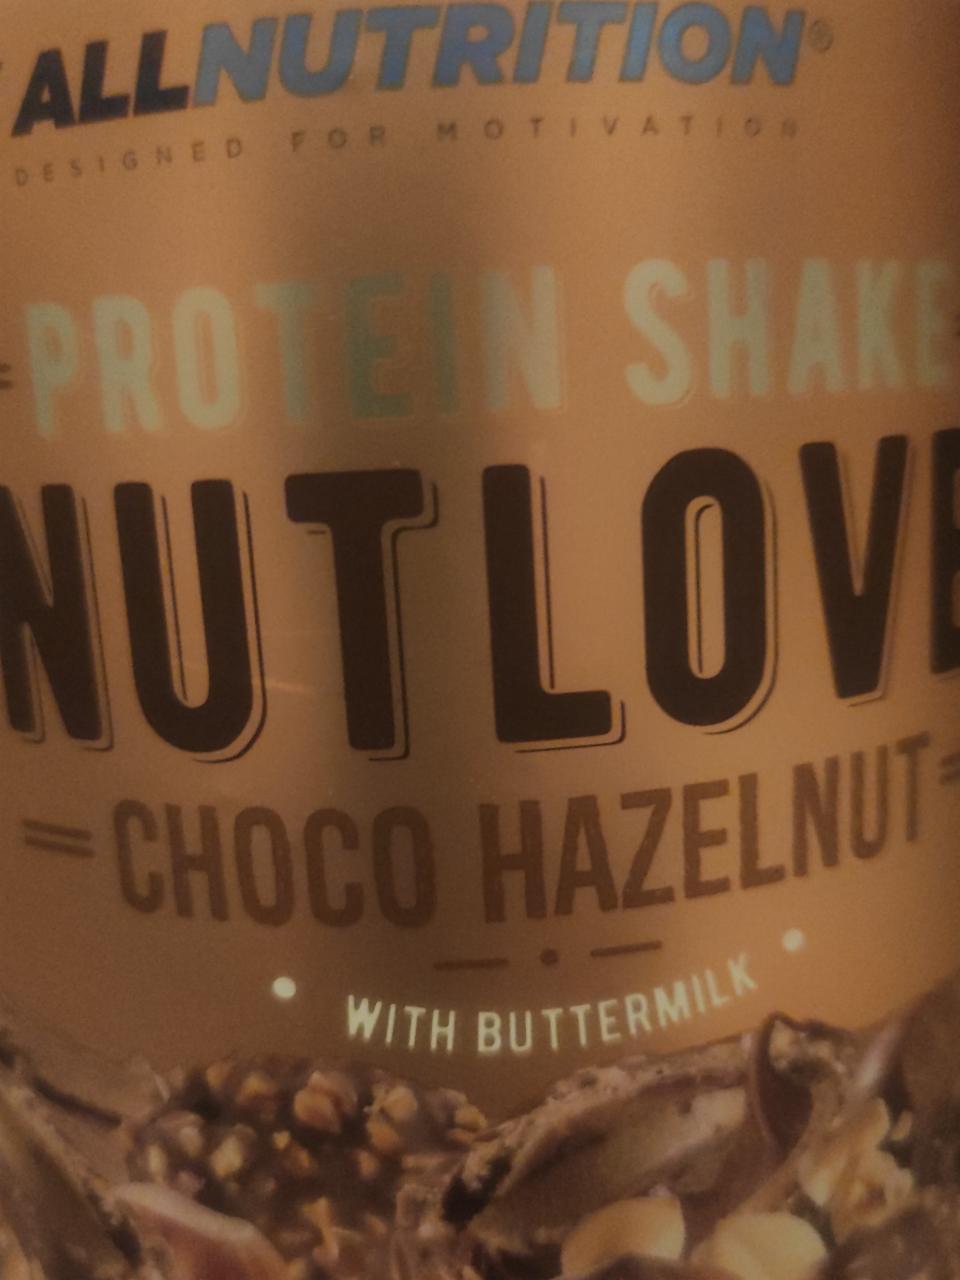 Fotografie - Nutlove Protein Shake Choco Hazelnut with Buttermilk Allnutrition